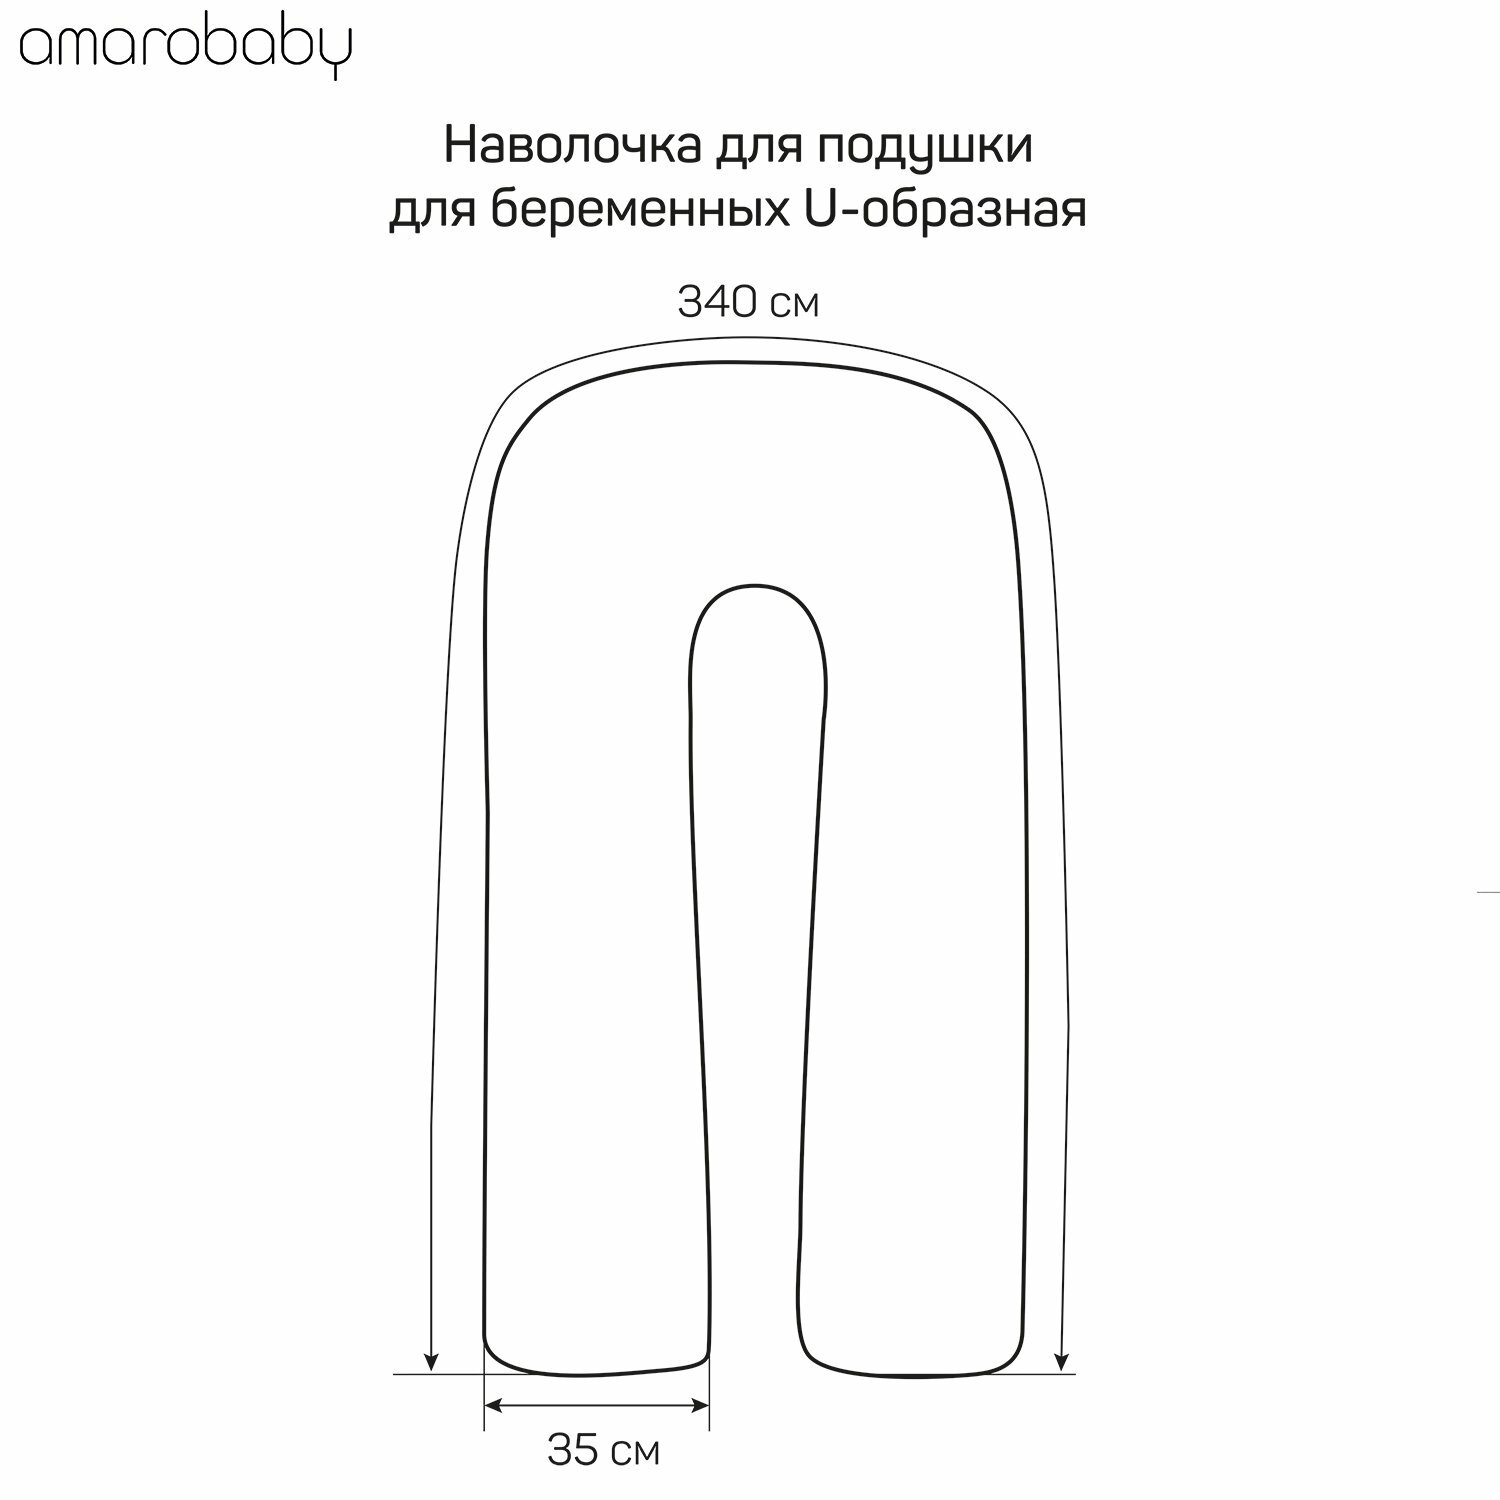 Подушка для беременных Amarobaby Совы 340 х 35 см, цвет: мультиколор - фото №8